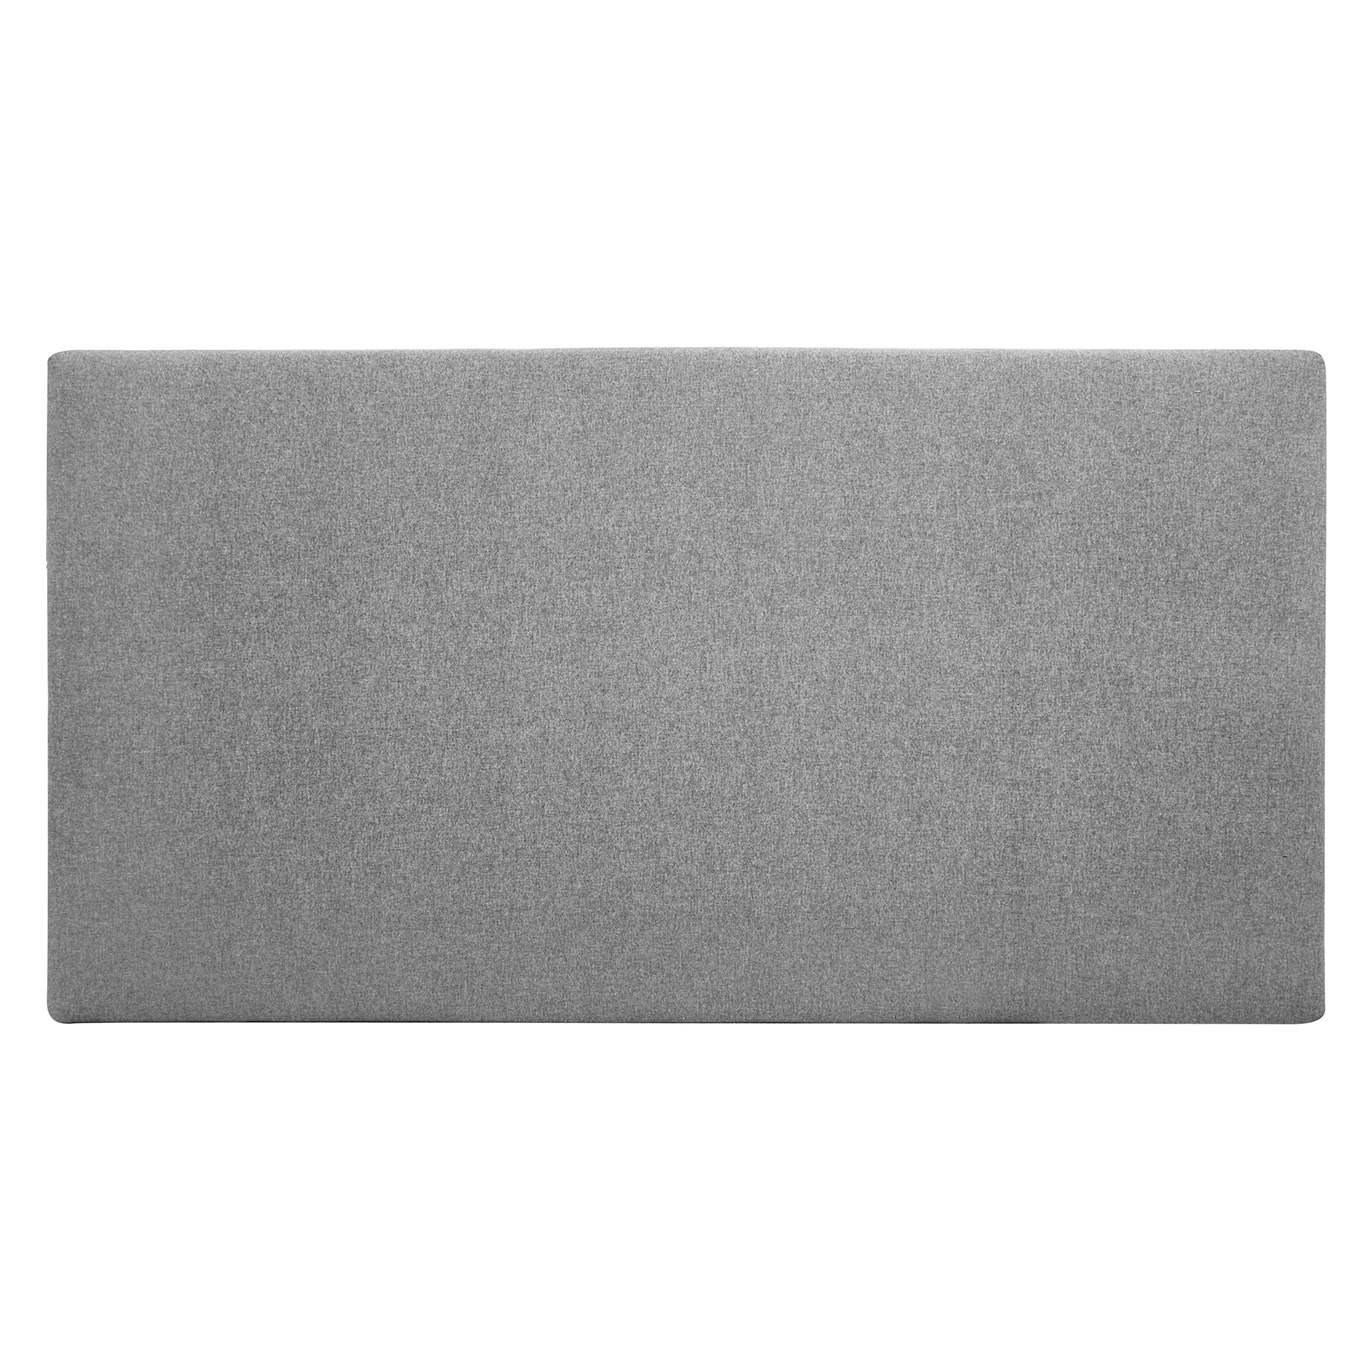 Tête de lit polyester lisse couleur grise 200x80cm